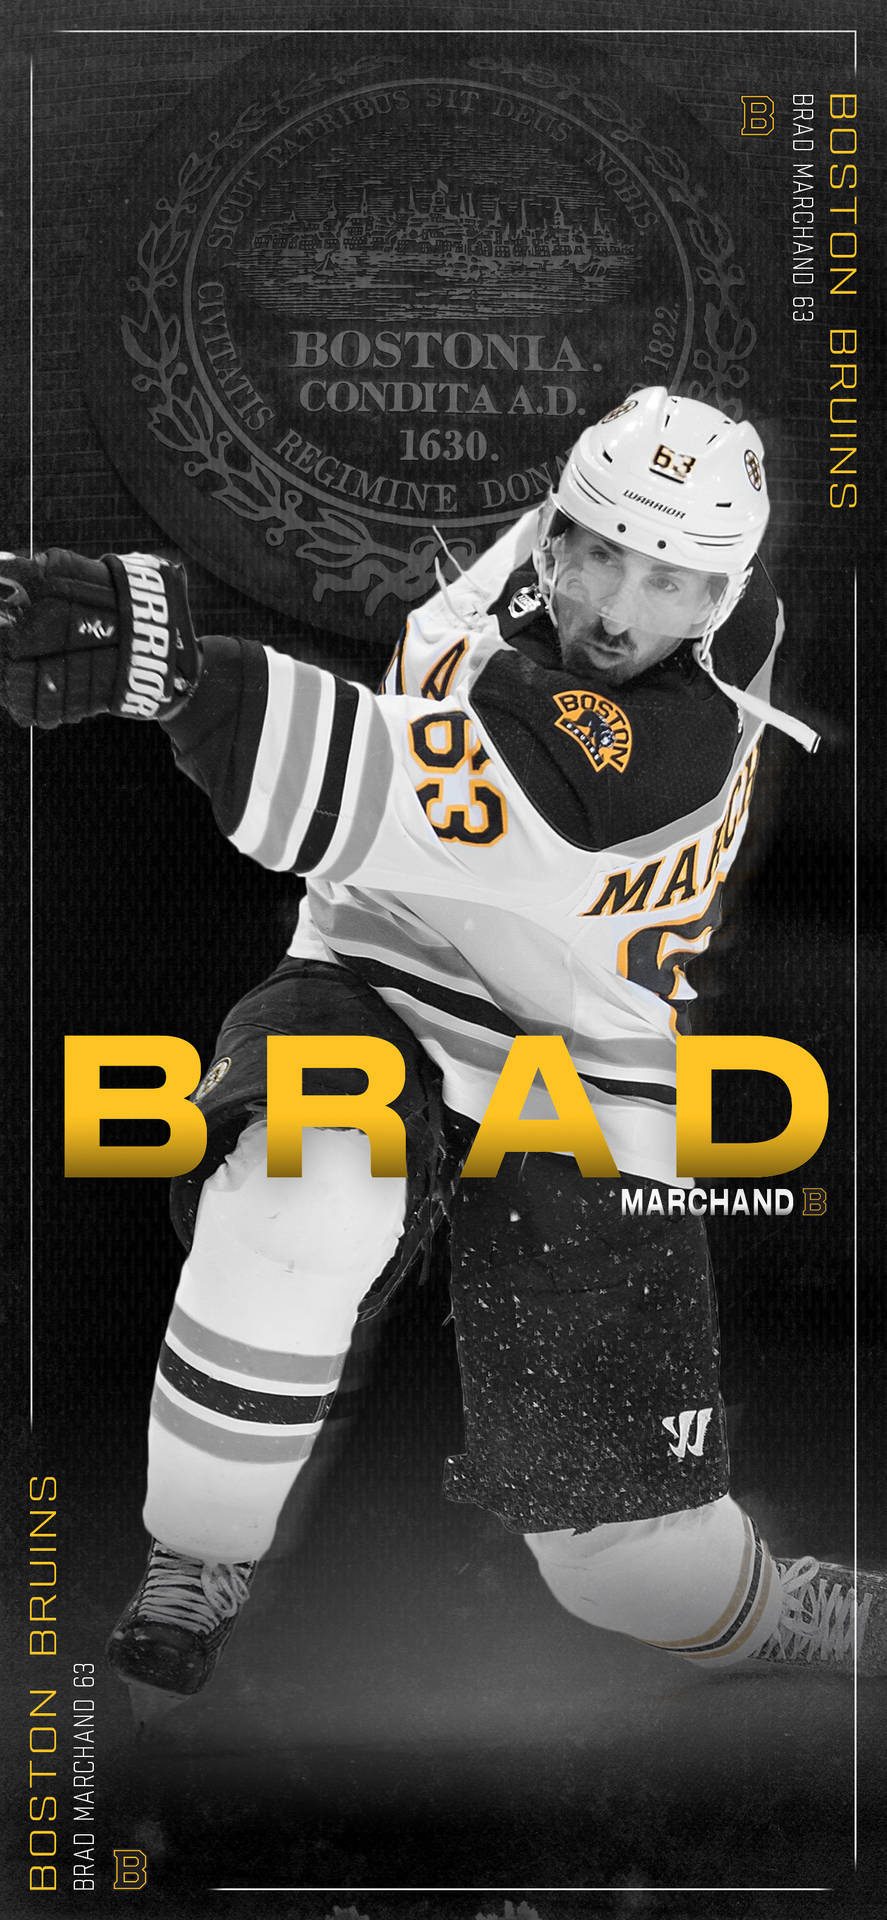 Bradmarchand Boston Bruins Affisch. Wallpaper